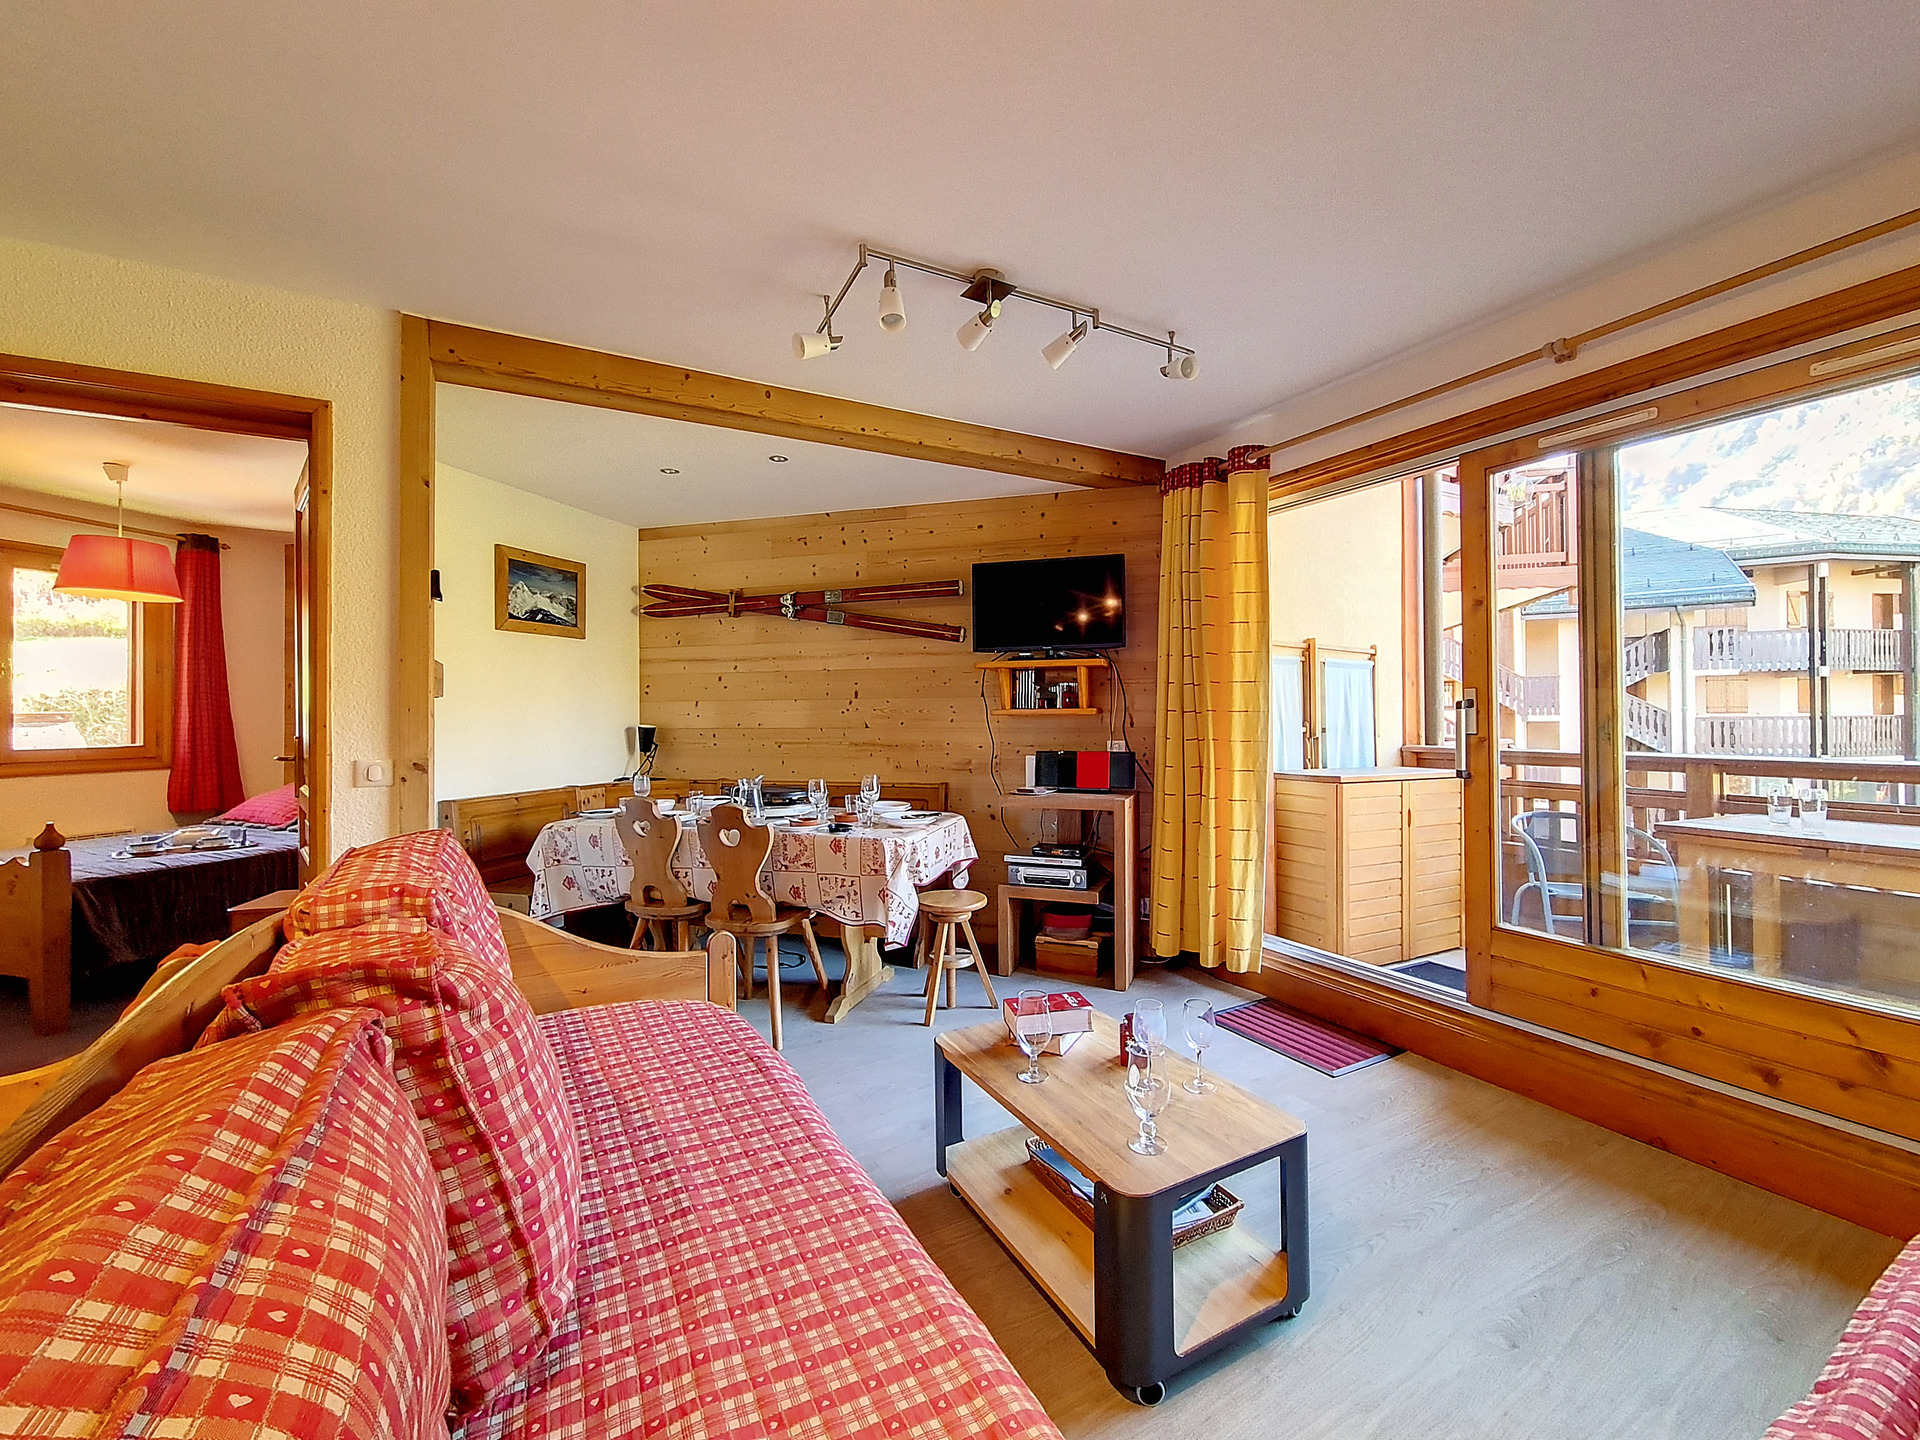 3 rooms 6 people - travelski home choice - Apartements BALCONS DE TOUGNETTE - Saint Martin de Belleville